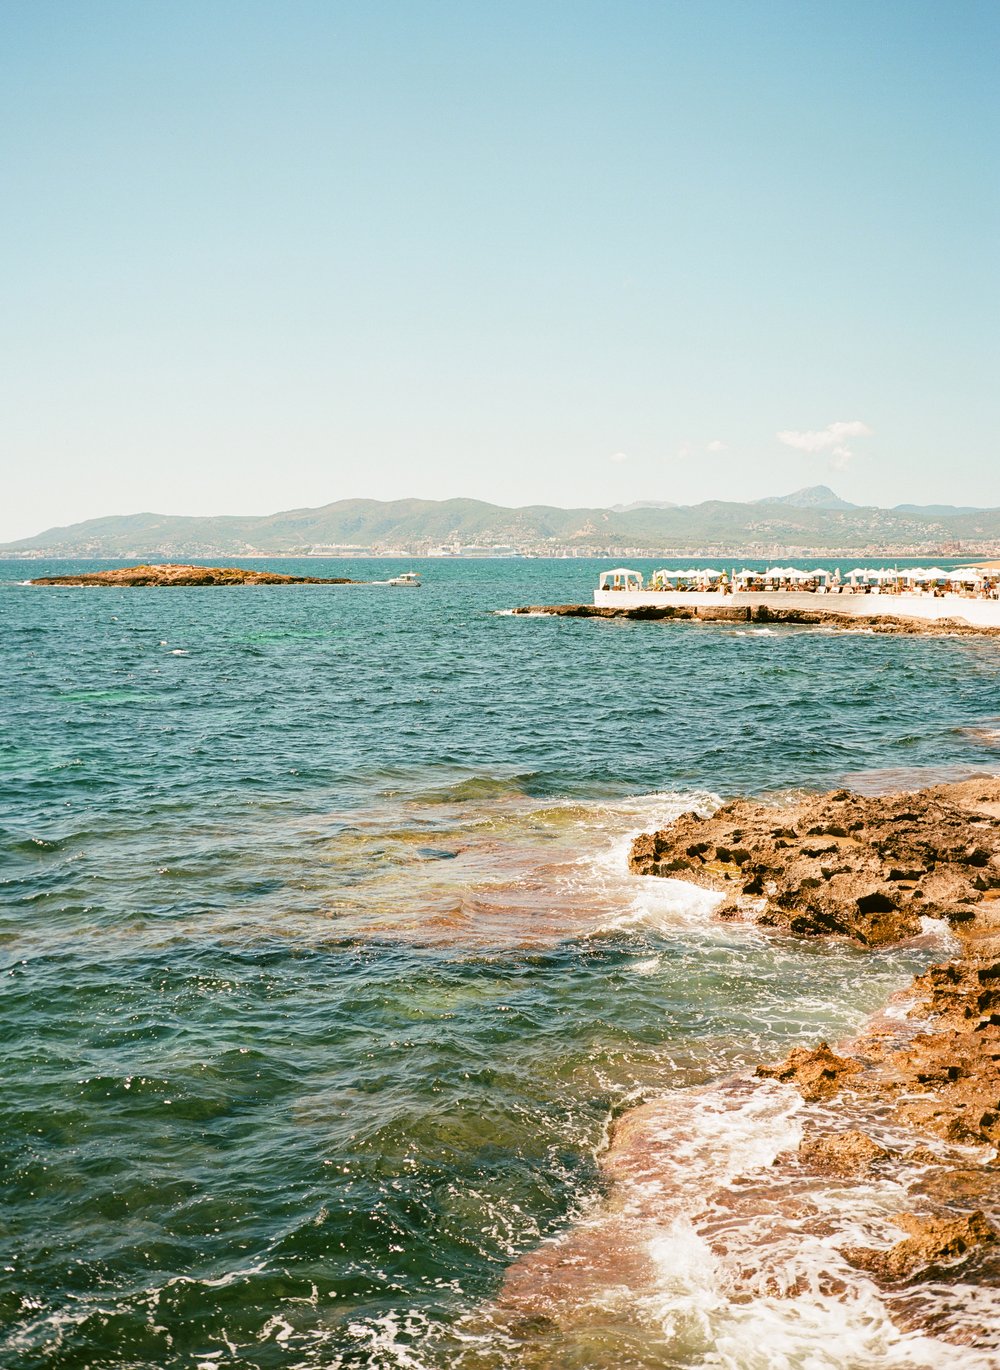  costal shore of Mallorca, Spain 